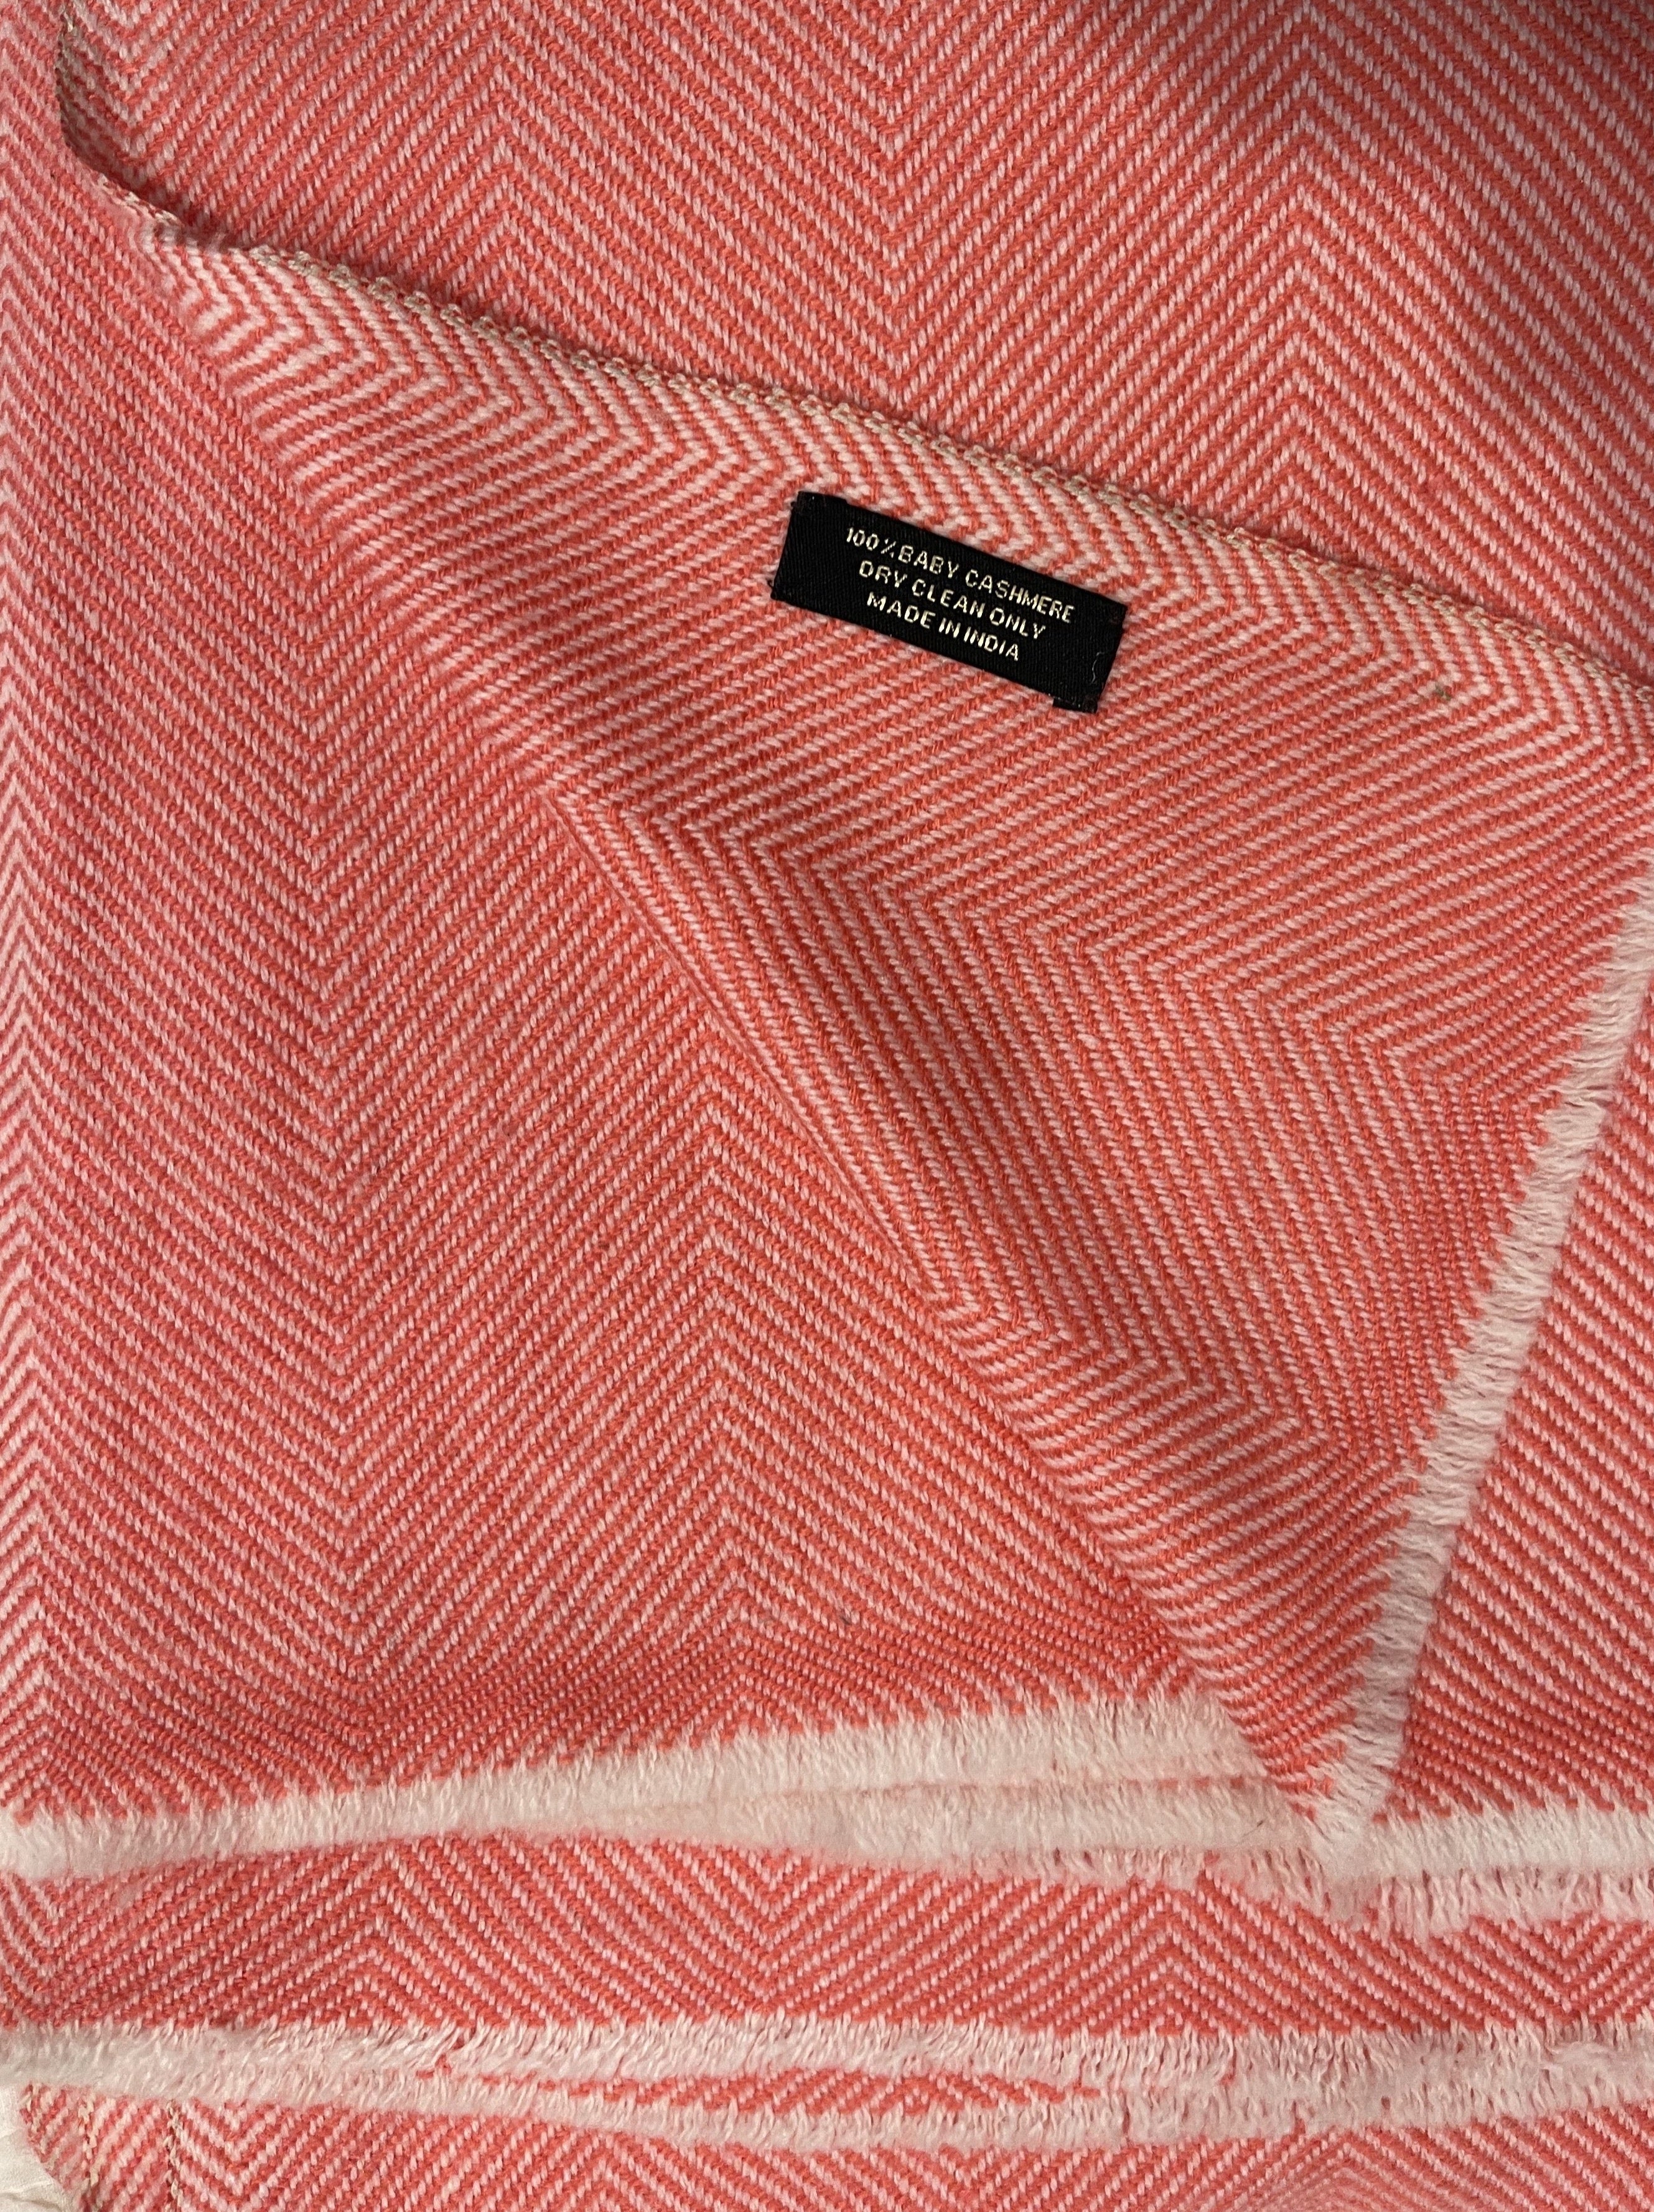 Cashmere Wrap - Coral Stripe